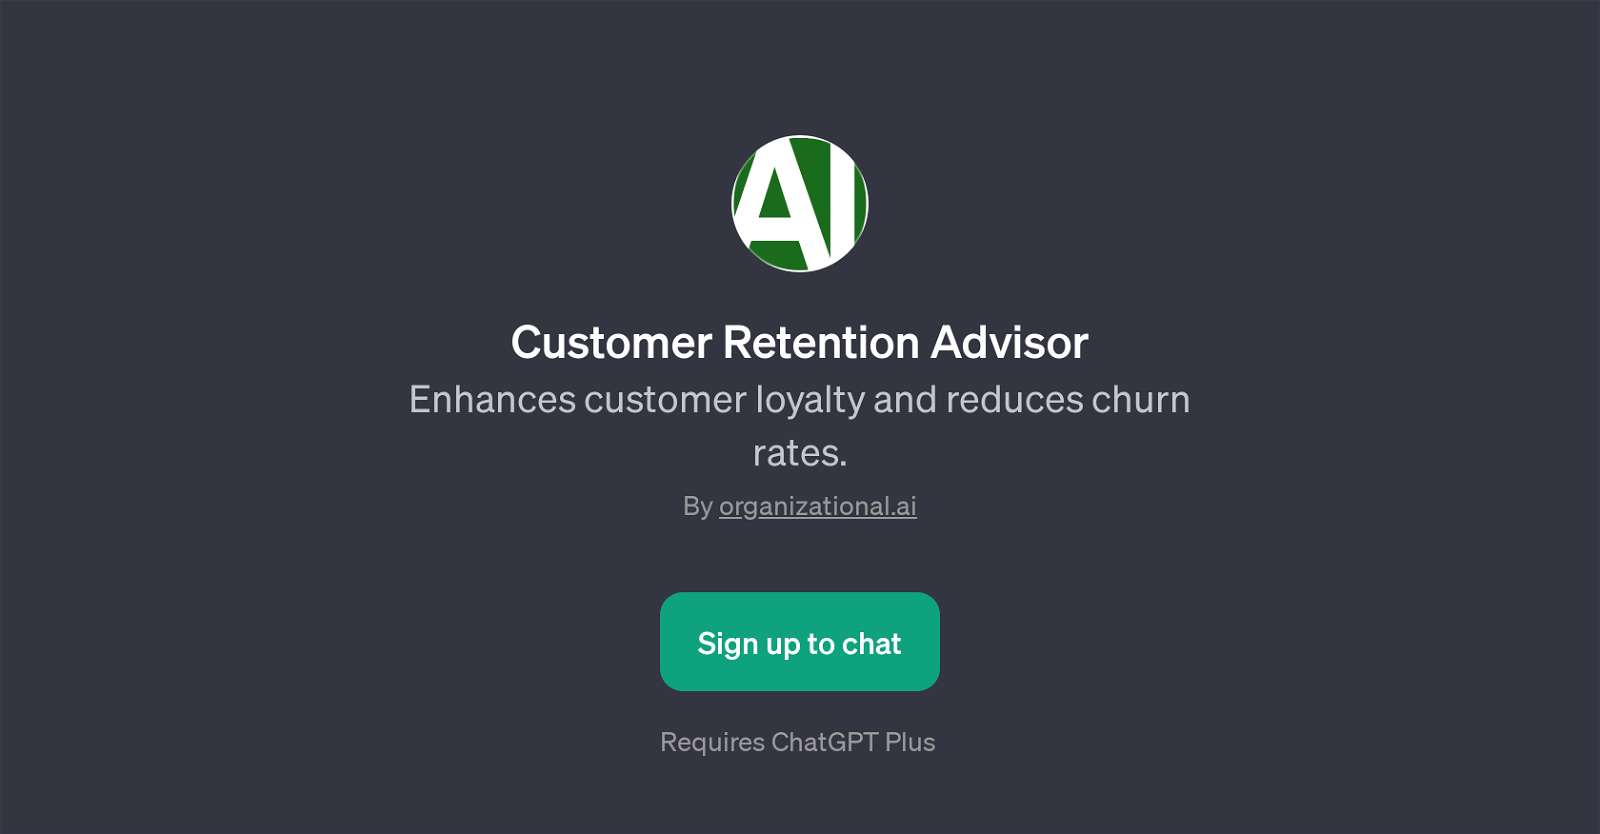 Customer Retention Advisor website